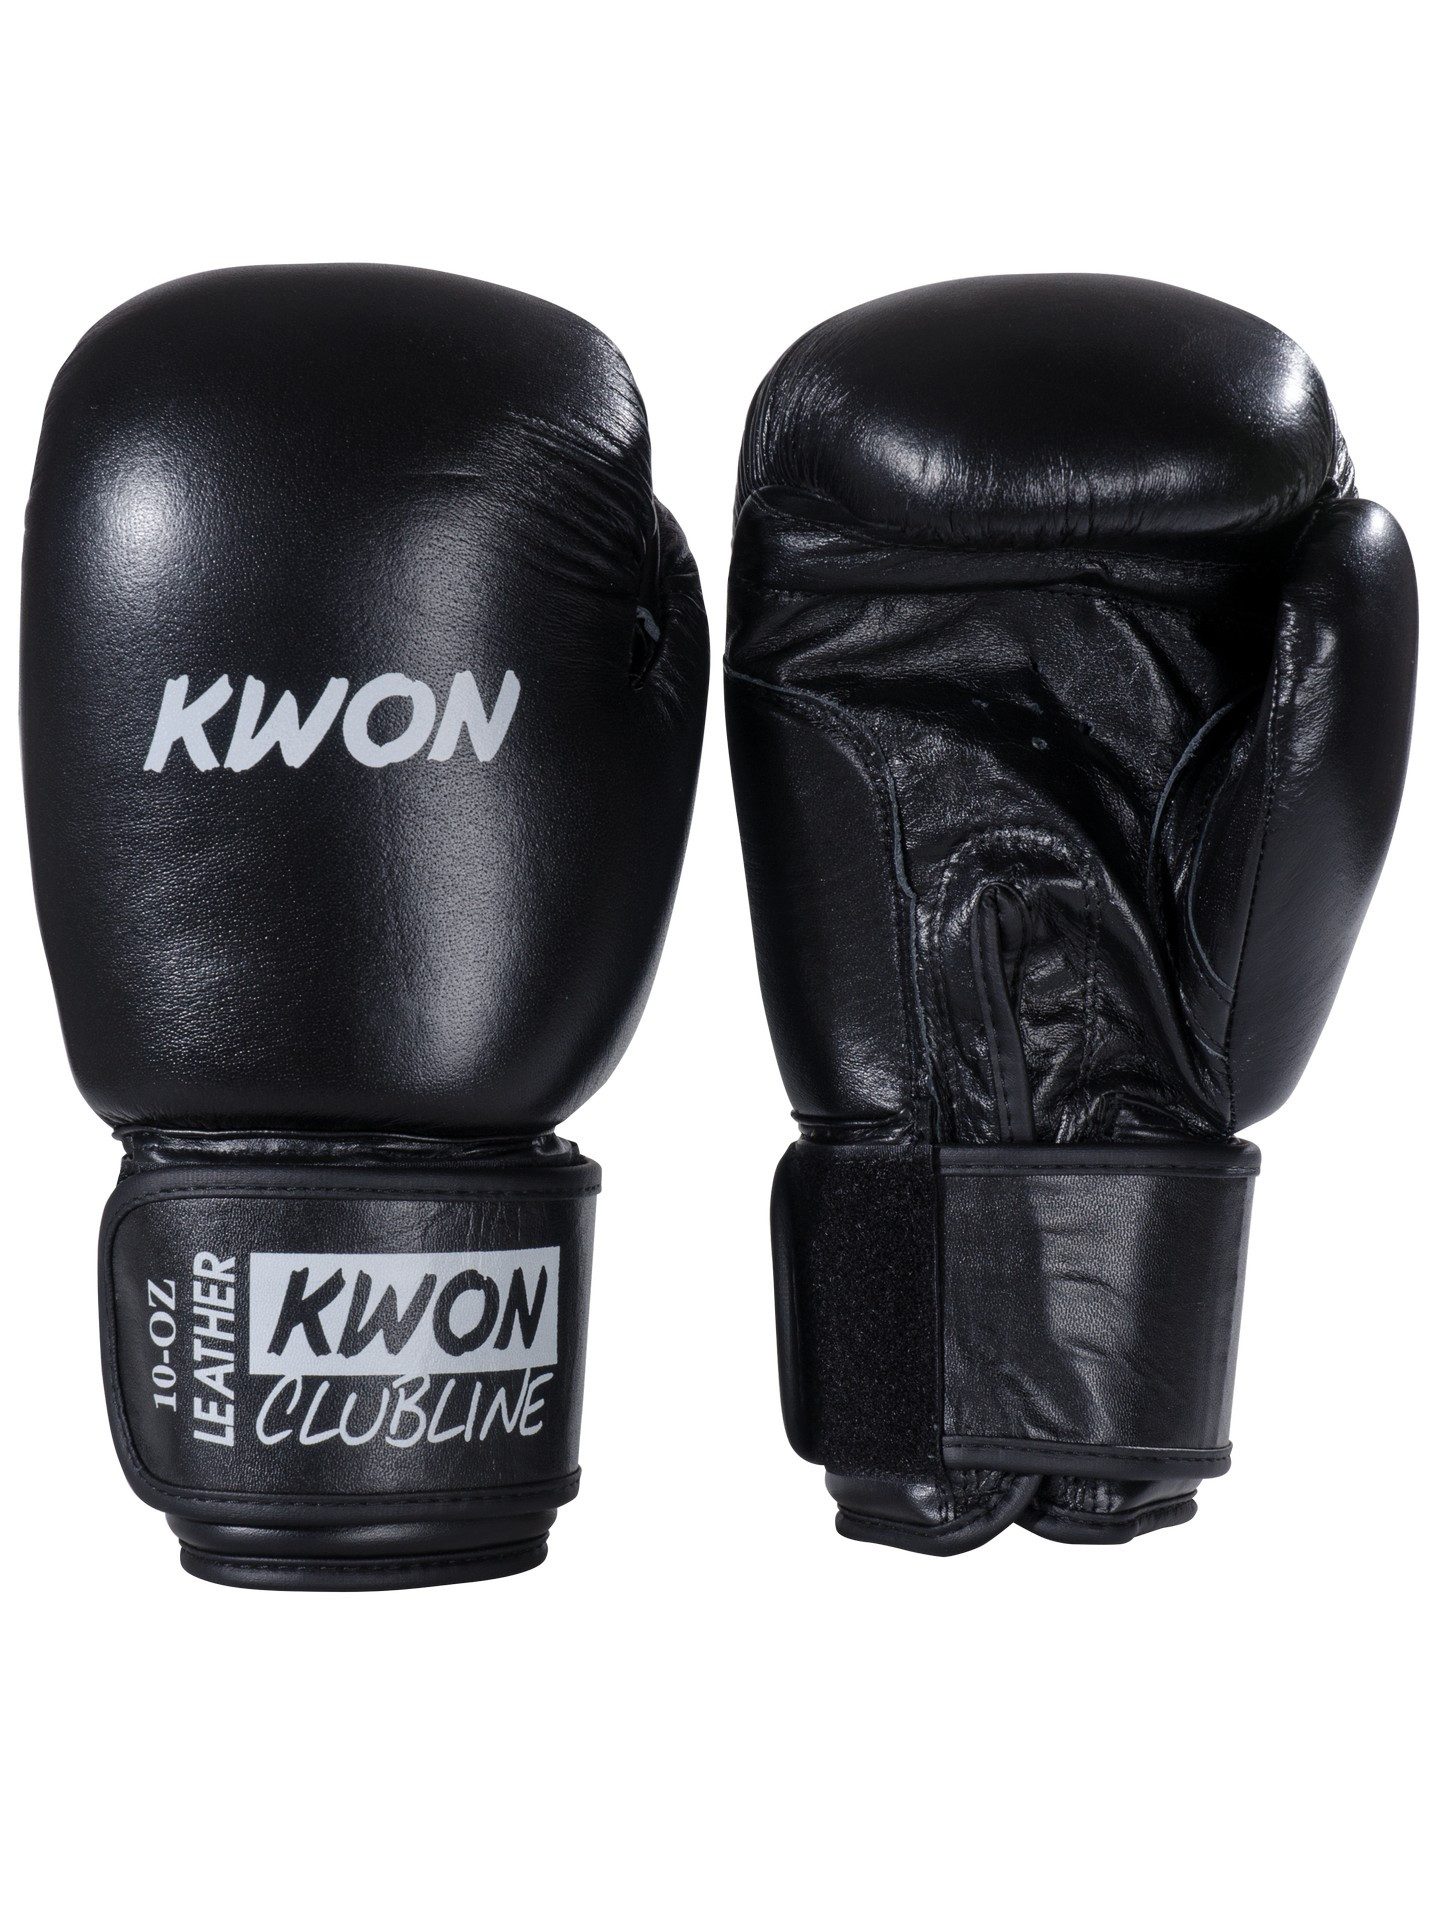 KWON Boxhandschuhe Pointer Echtleder Leder 10 Unzen UZ Box-Handschuhe Boxen Kickboxen (Paar, Farbe schwarz), Mit Wettkampfeigenschaften für Boxen, Kickboxen, Thaiboxen usw.